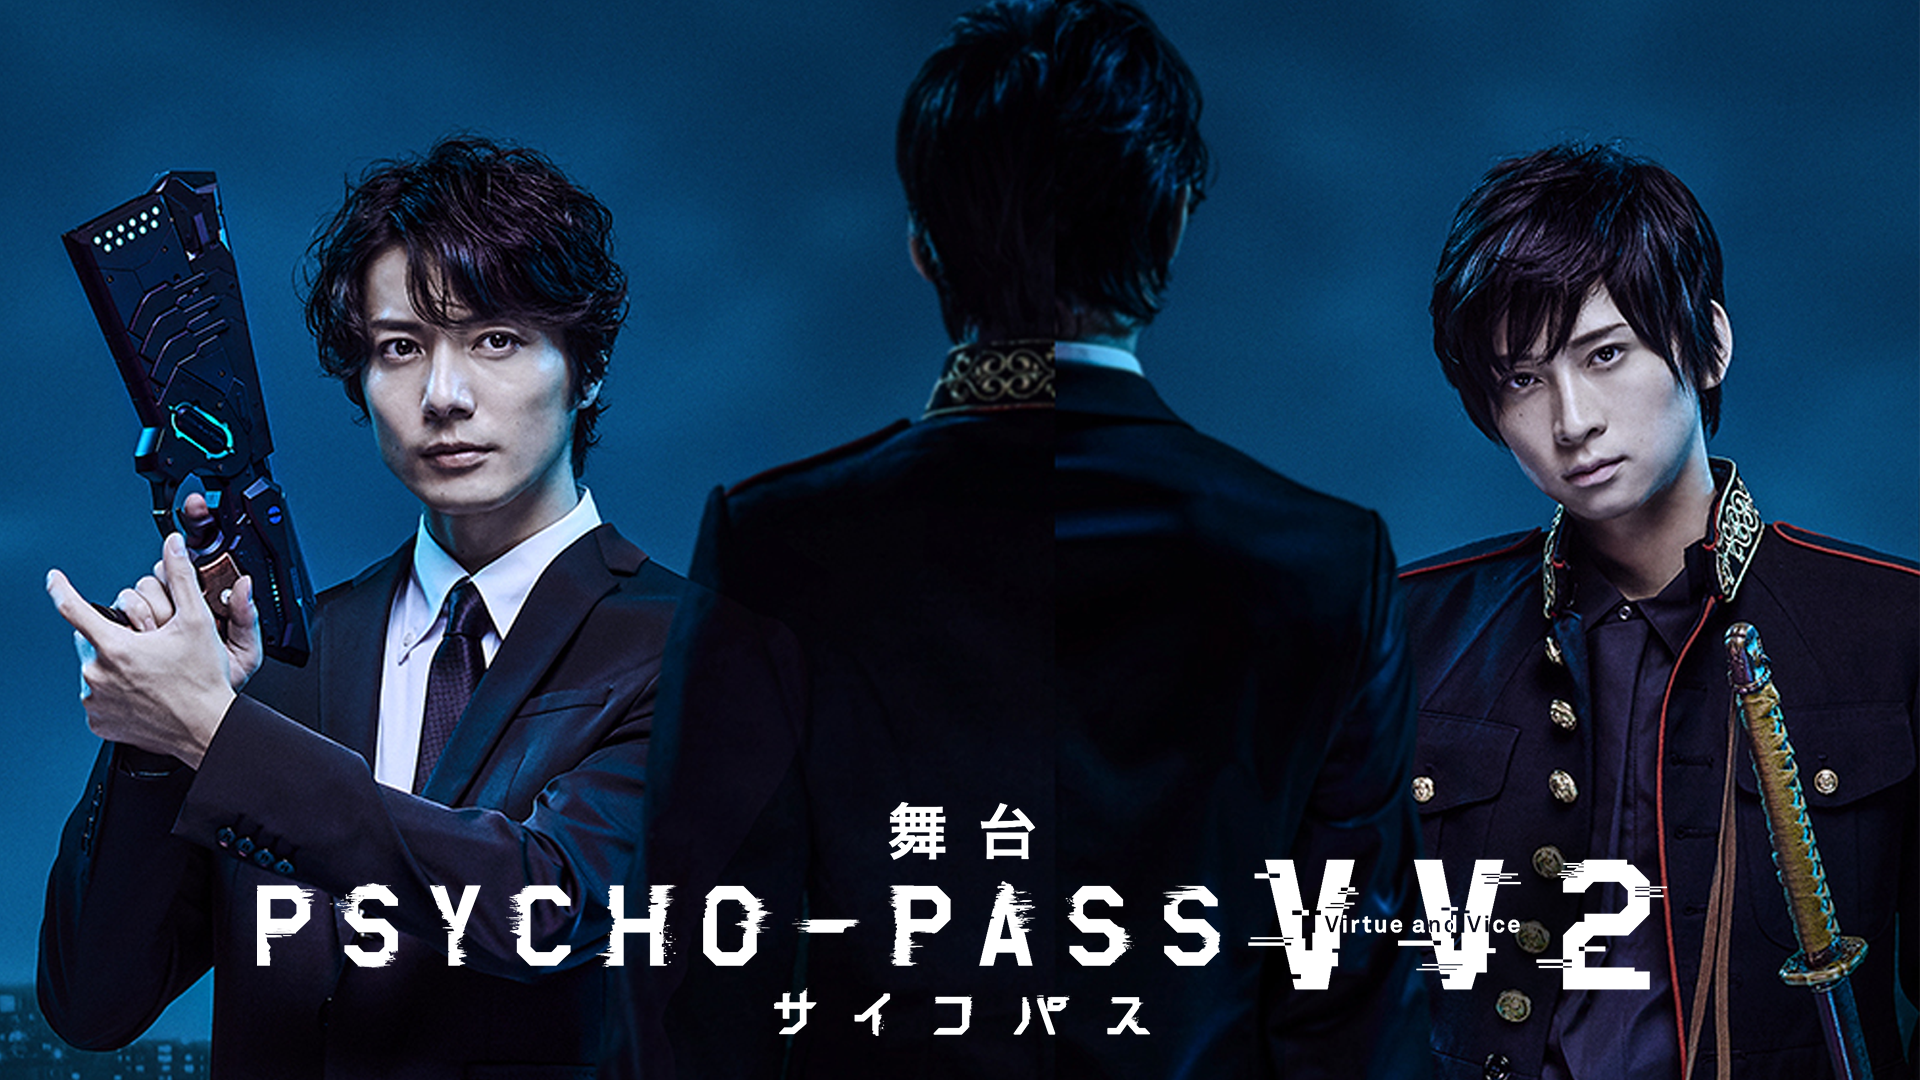 舞台 PSYCHO-PASS サイコパス Virtue and Vice２(アニメ / 2020 